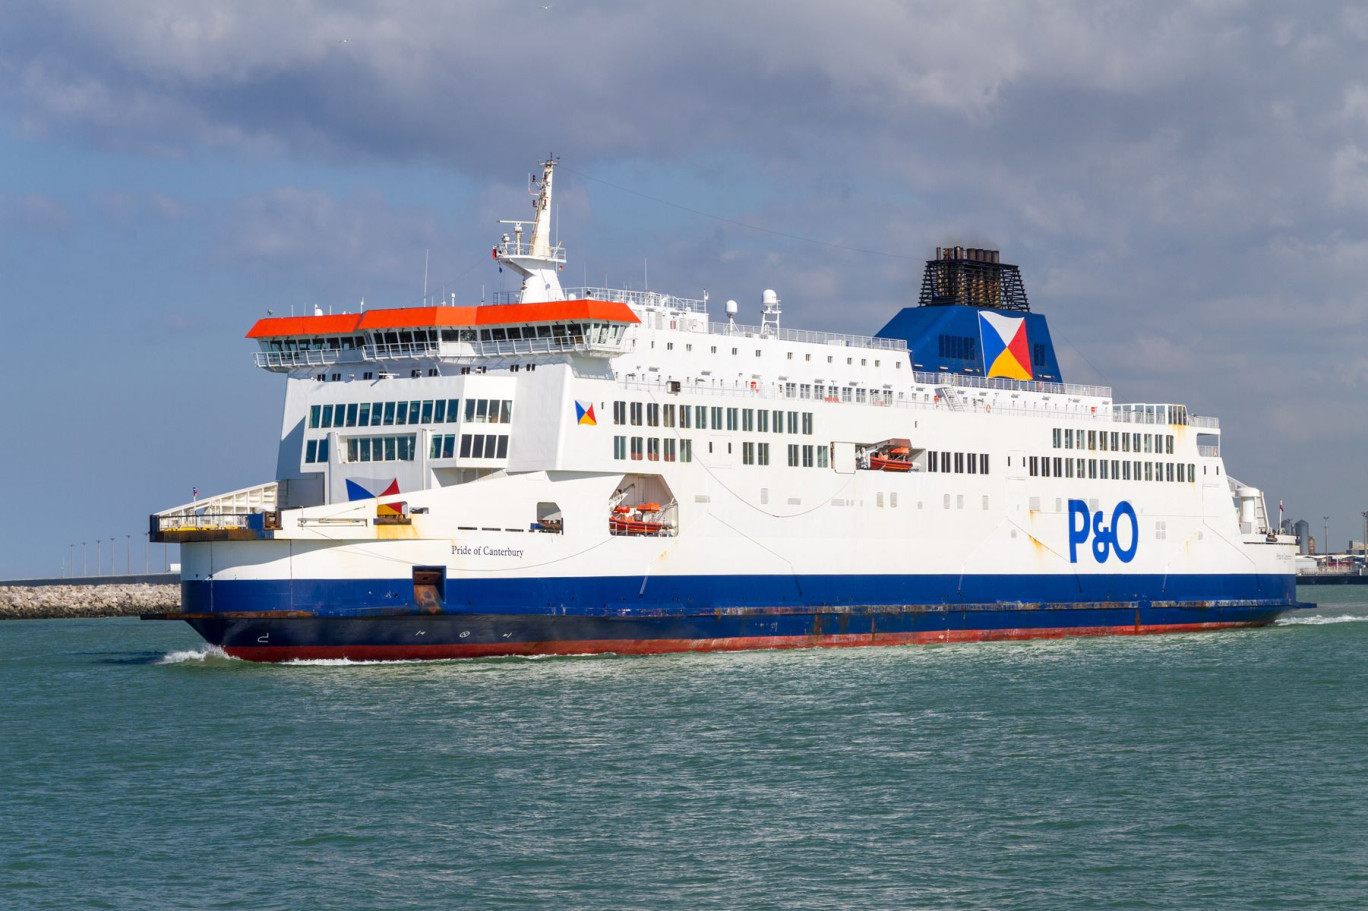 La compagnie maritime P&O France compte, à Calais, plus de 250 employés sédentaires et 15 navigants. © olivierguerinphoto